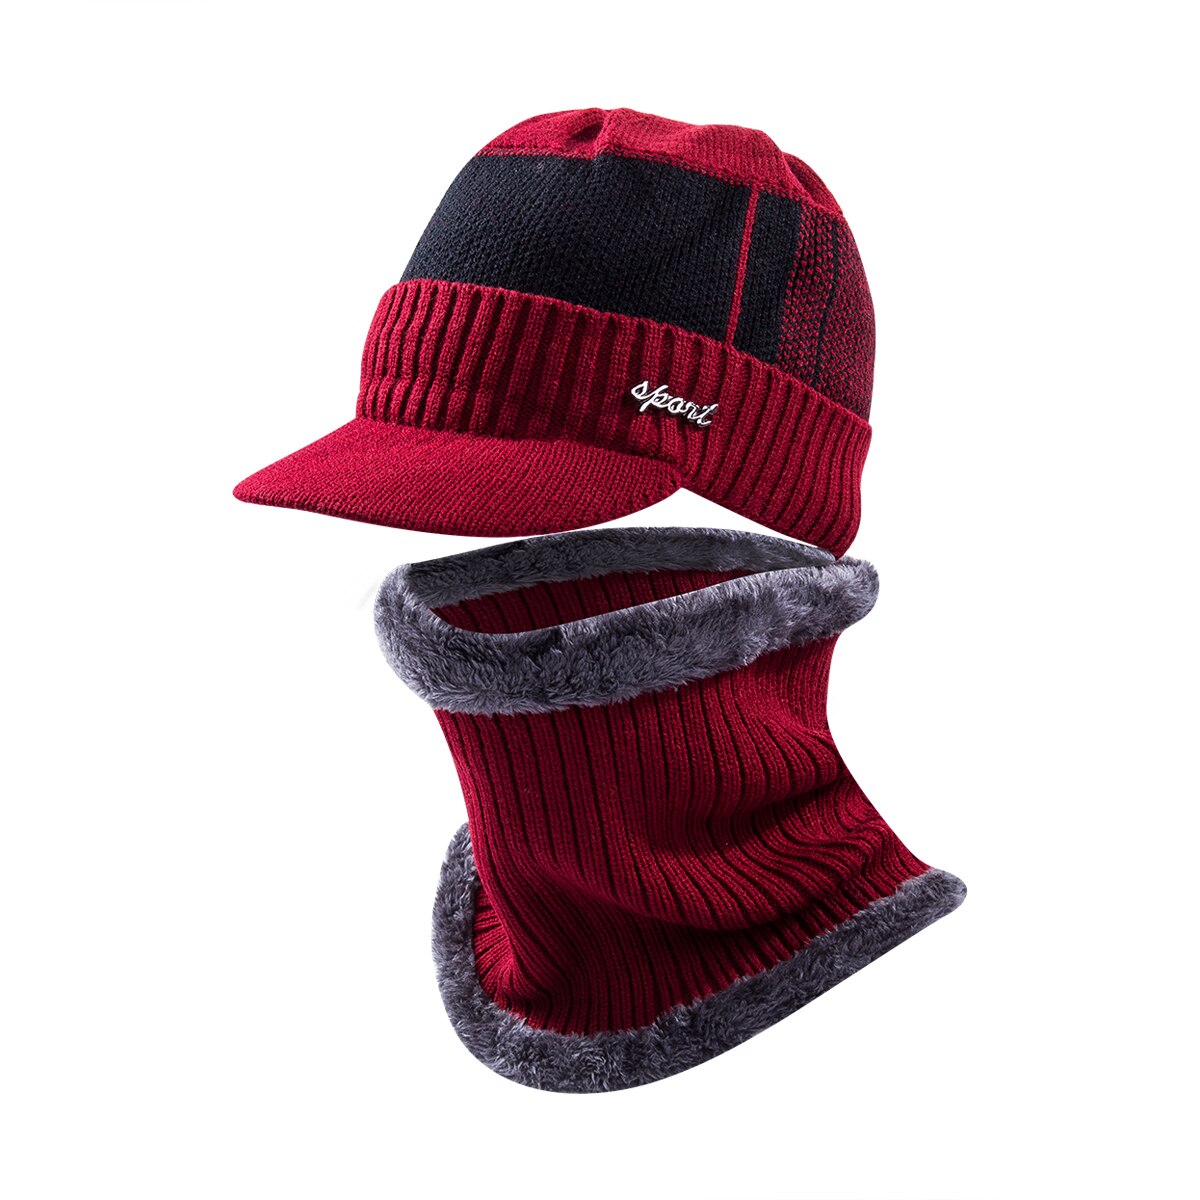 Mænd unisex sport vinter varm hat strikket visir beanie fleece foret næbshue med brim cap